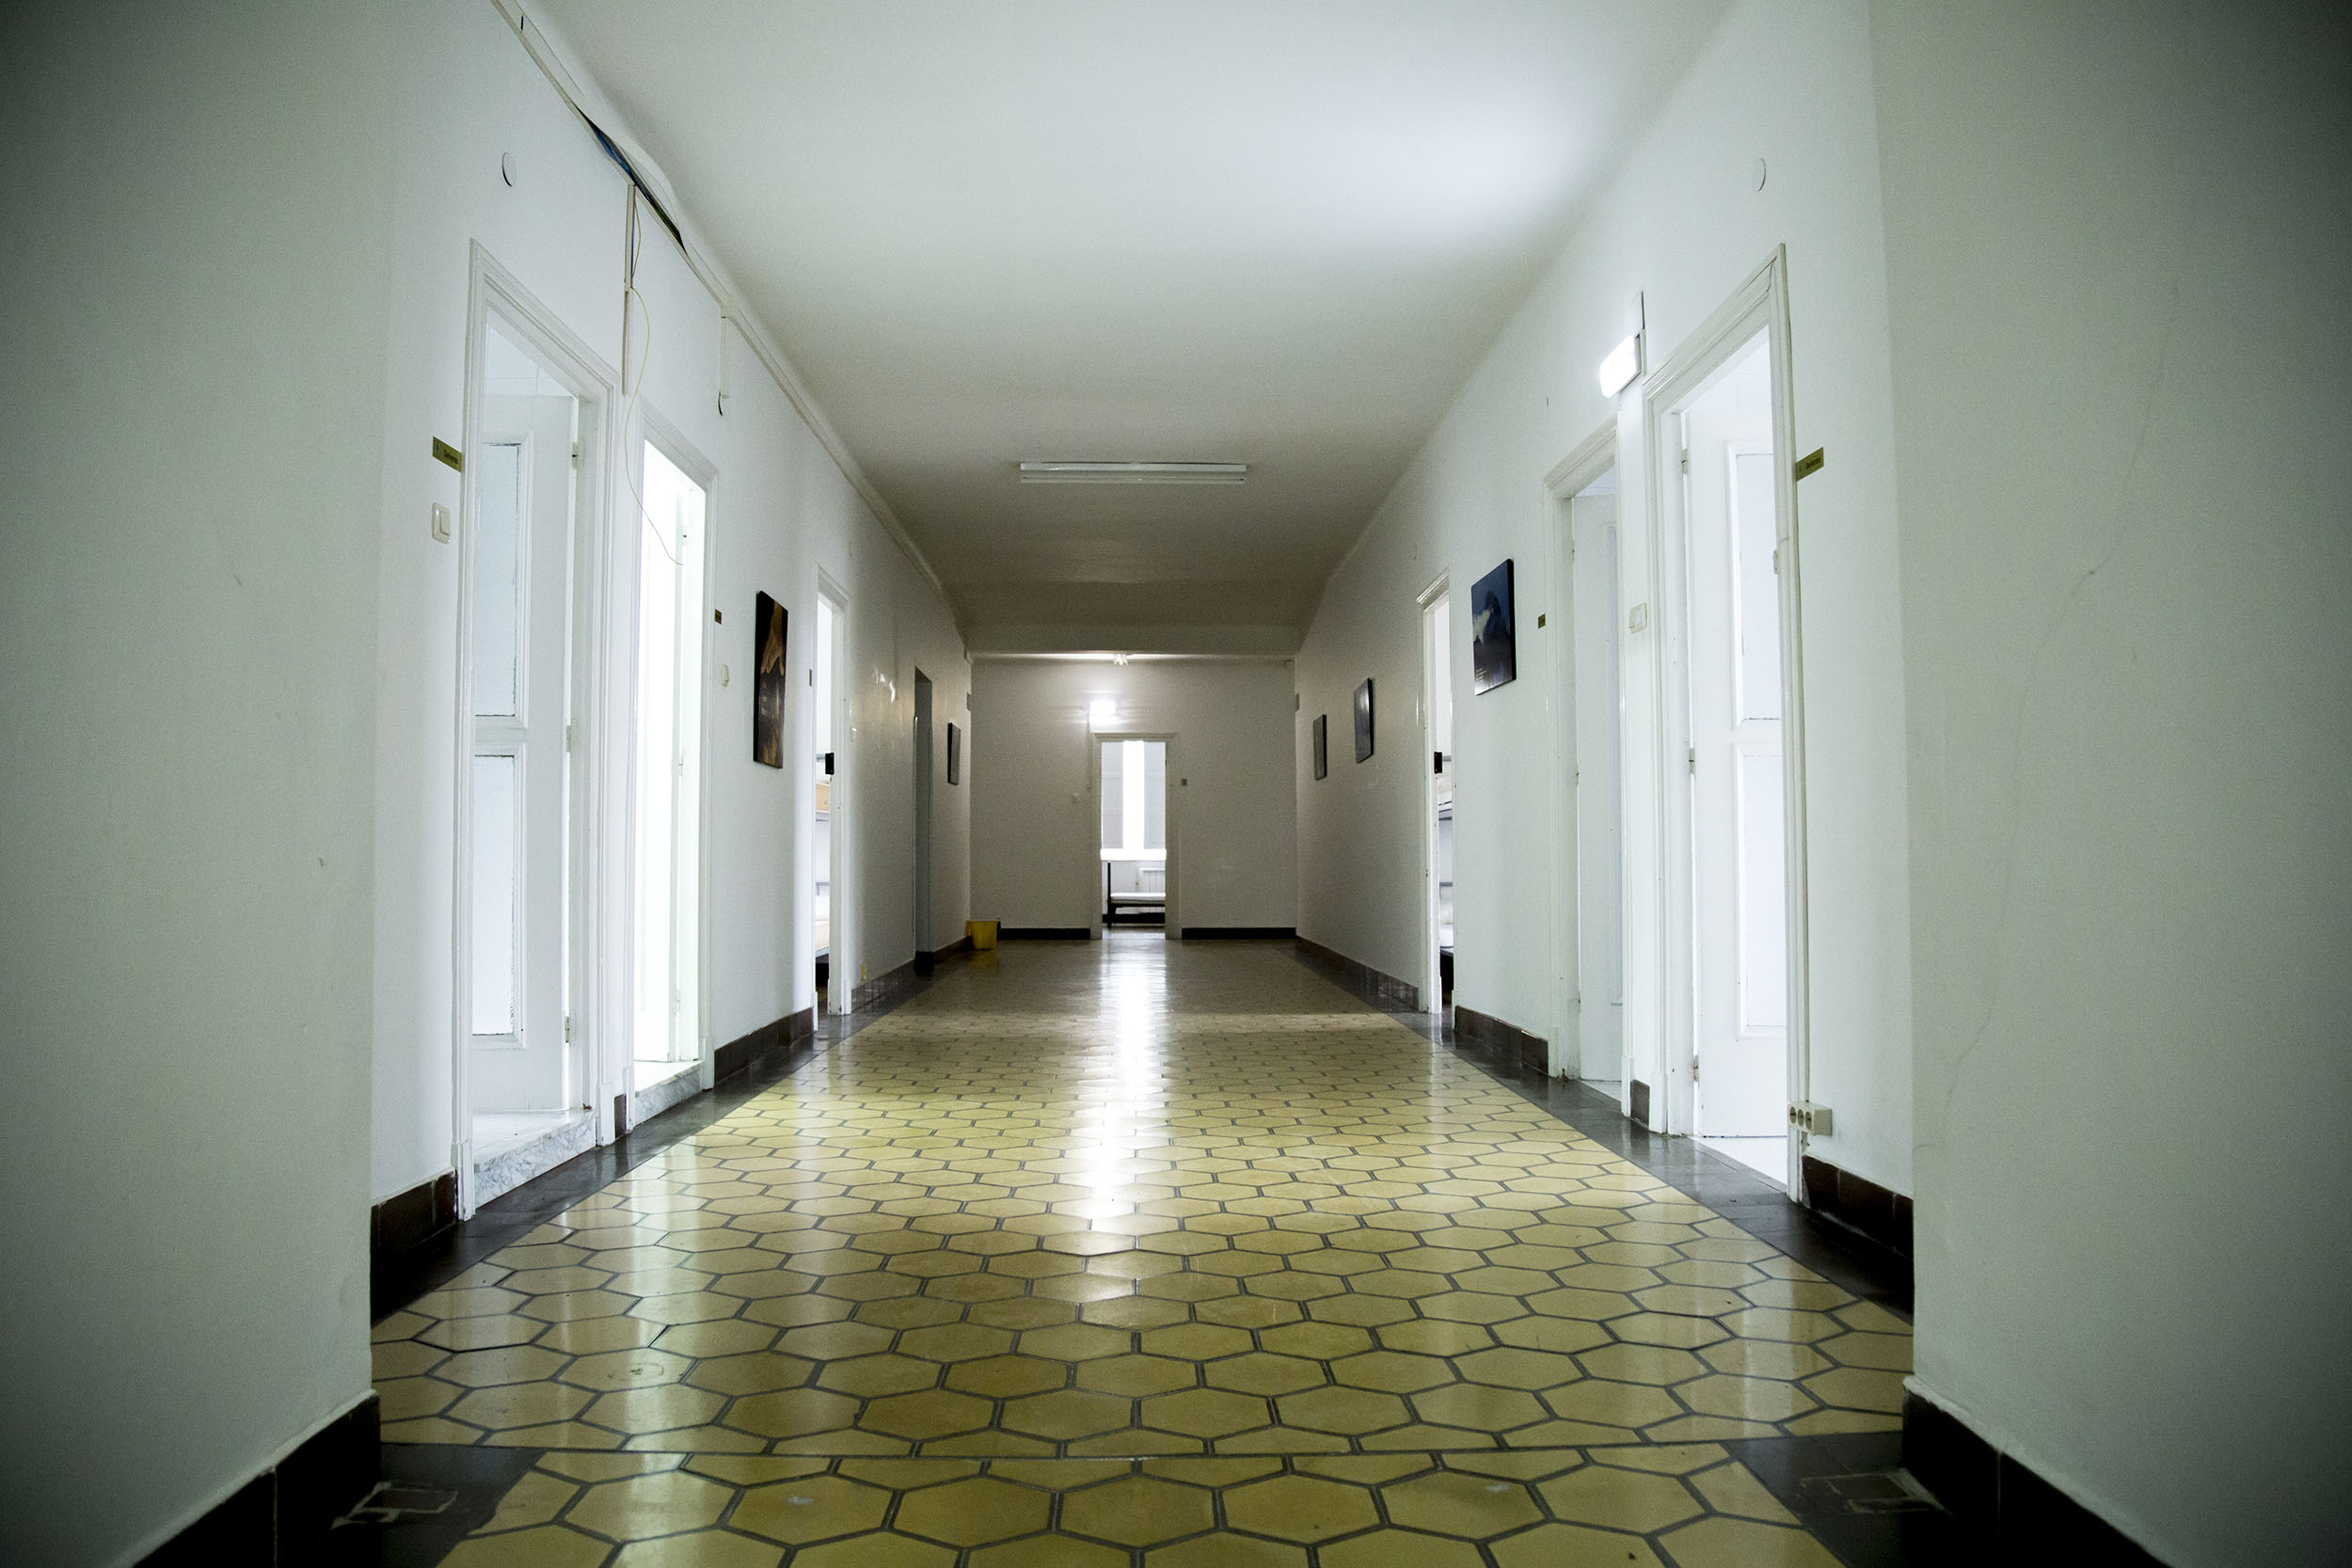 Fotografía del interior del albergue de El Salvador donse se ve en perspectiva el pasillo principal donde se sitúan las habitaciones con una gran luminosidad.